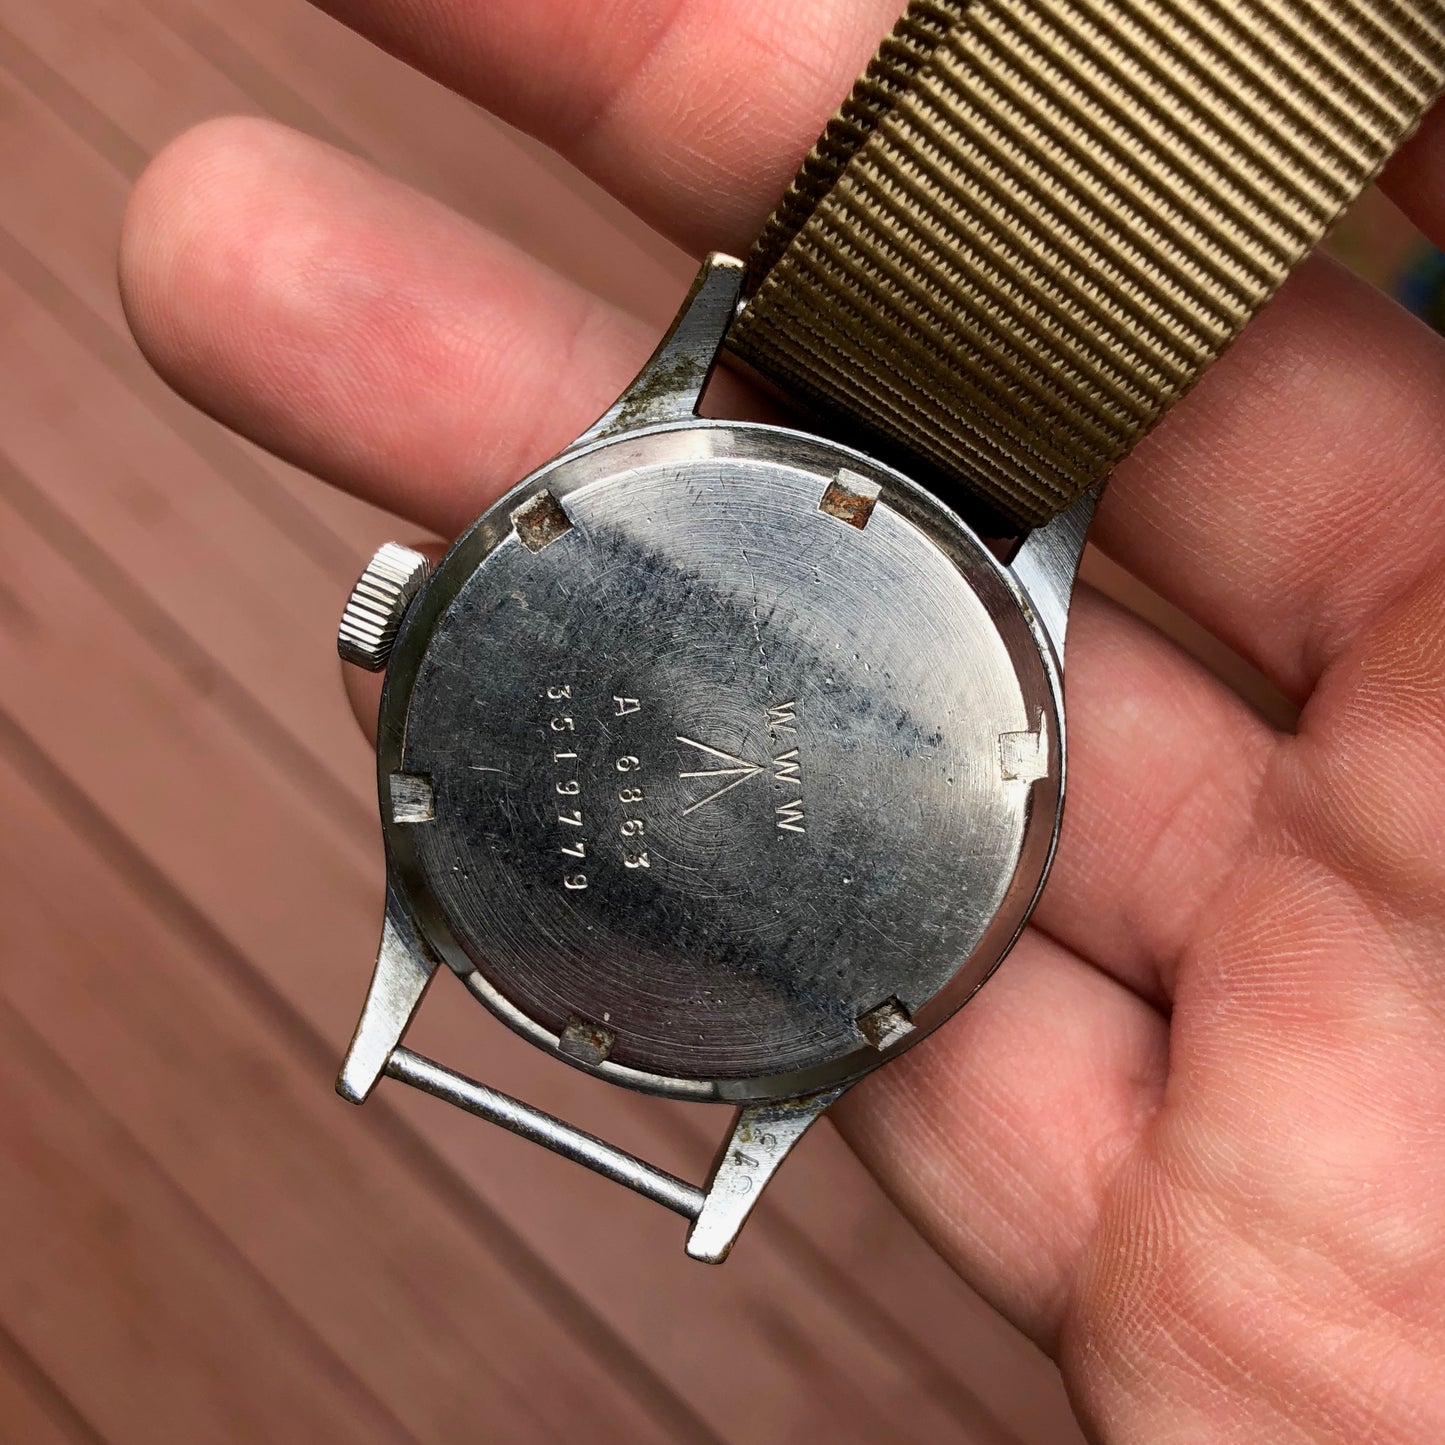 Vintage Vertex WWW Military Dirty Dozen British Military WWII Black Wristwatch - Hashtag Watch Company